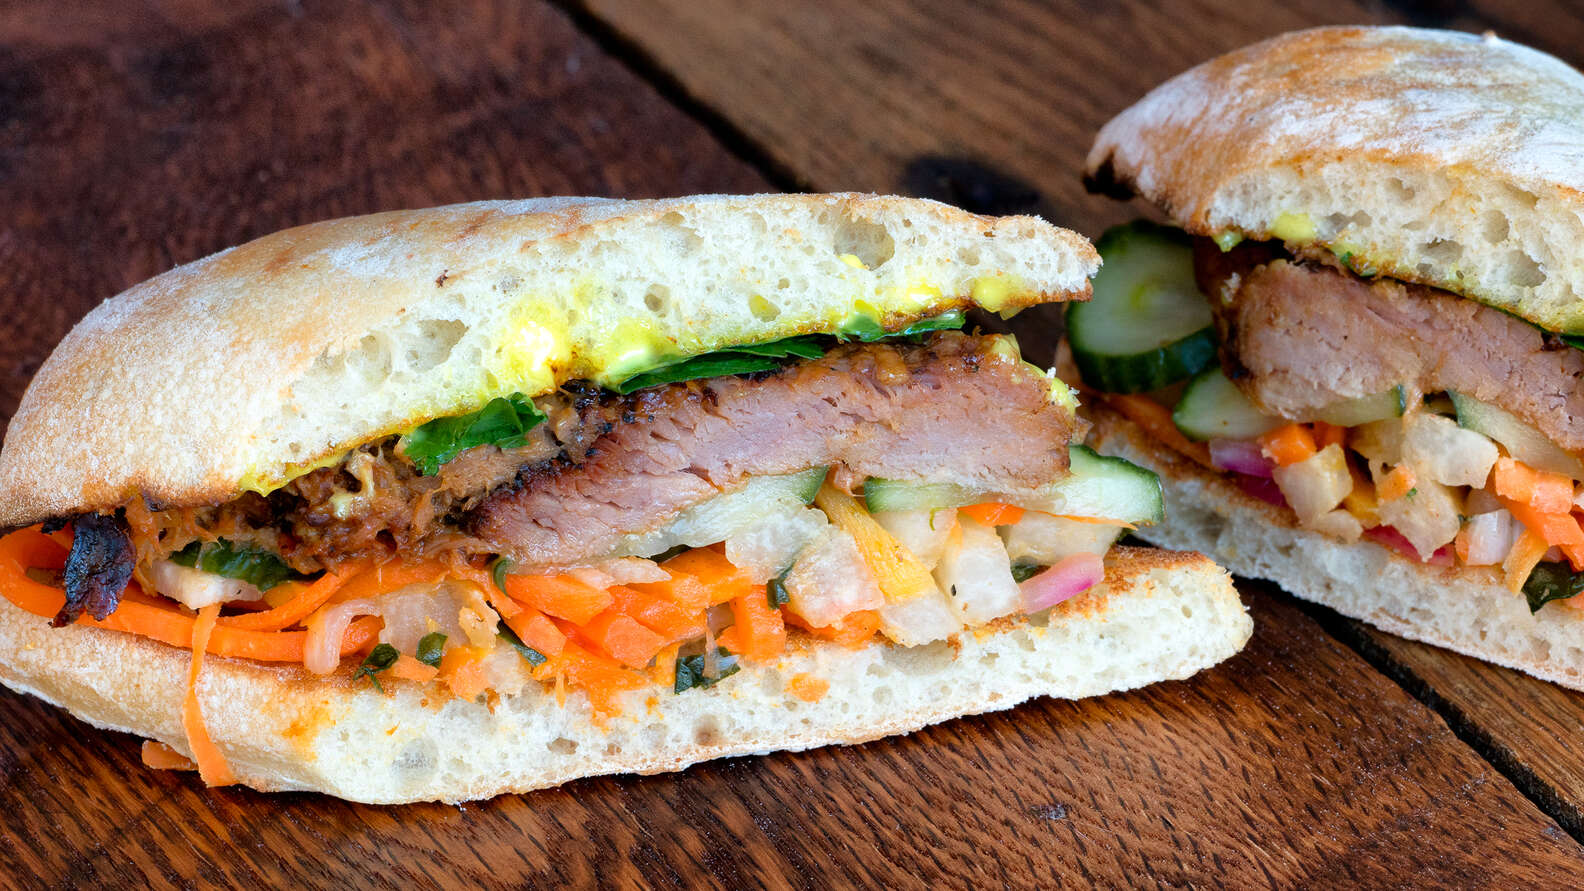 Best Sandwich Shops in America: Best Sandwich Near Me - Thrillist